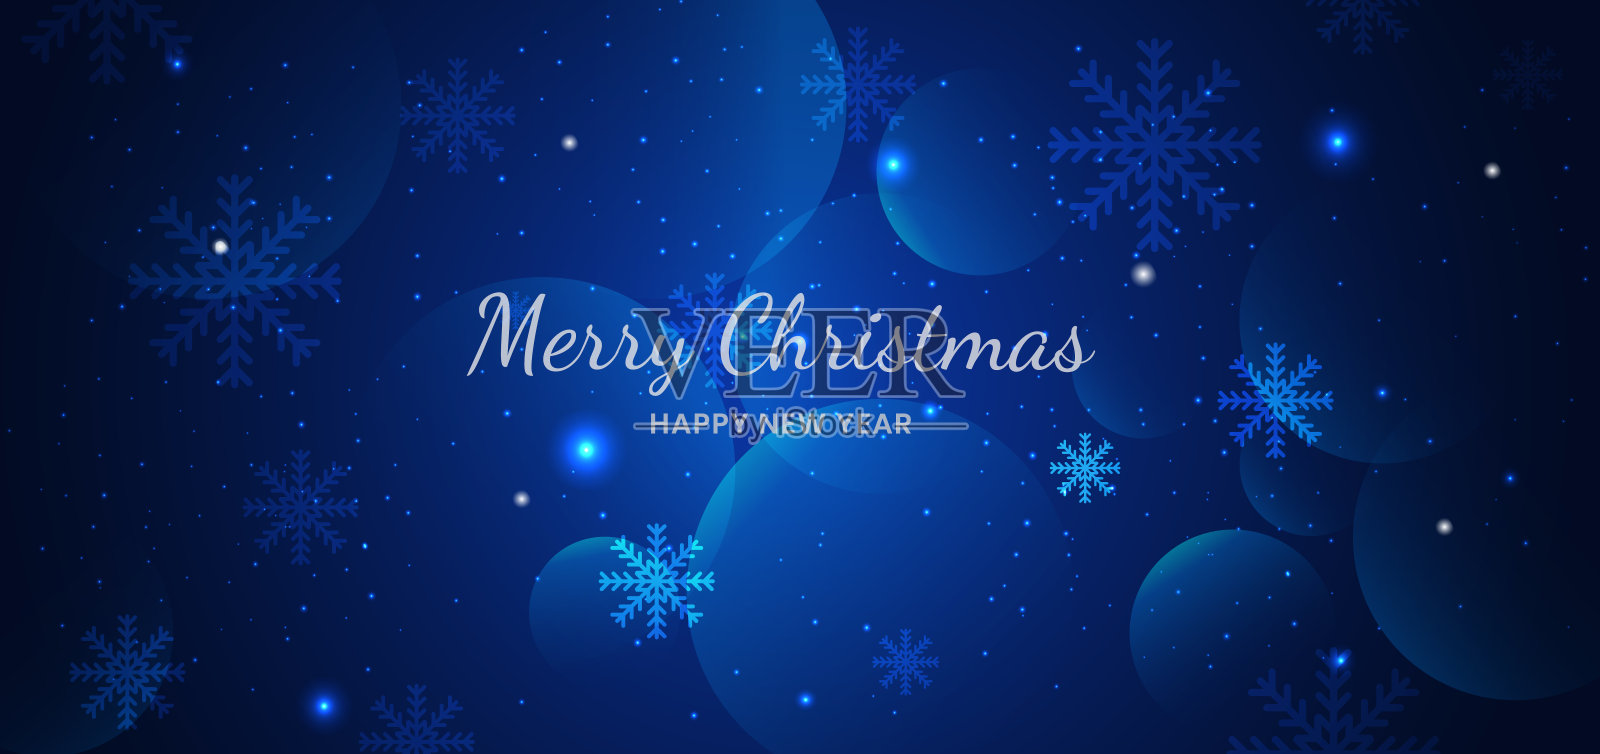 横幅圣诞快乐雪花蓝色背景设计。设计模板素材